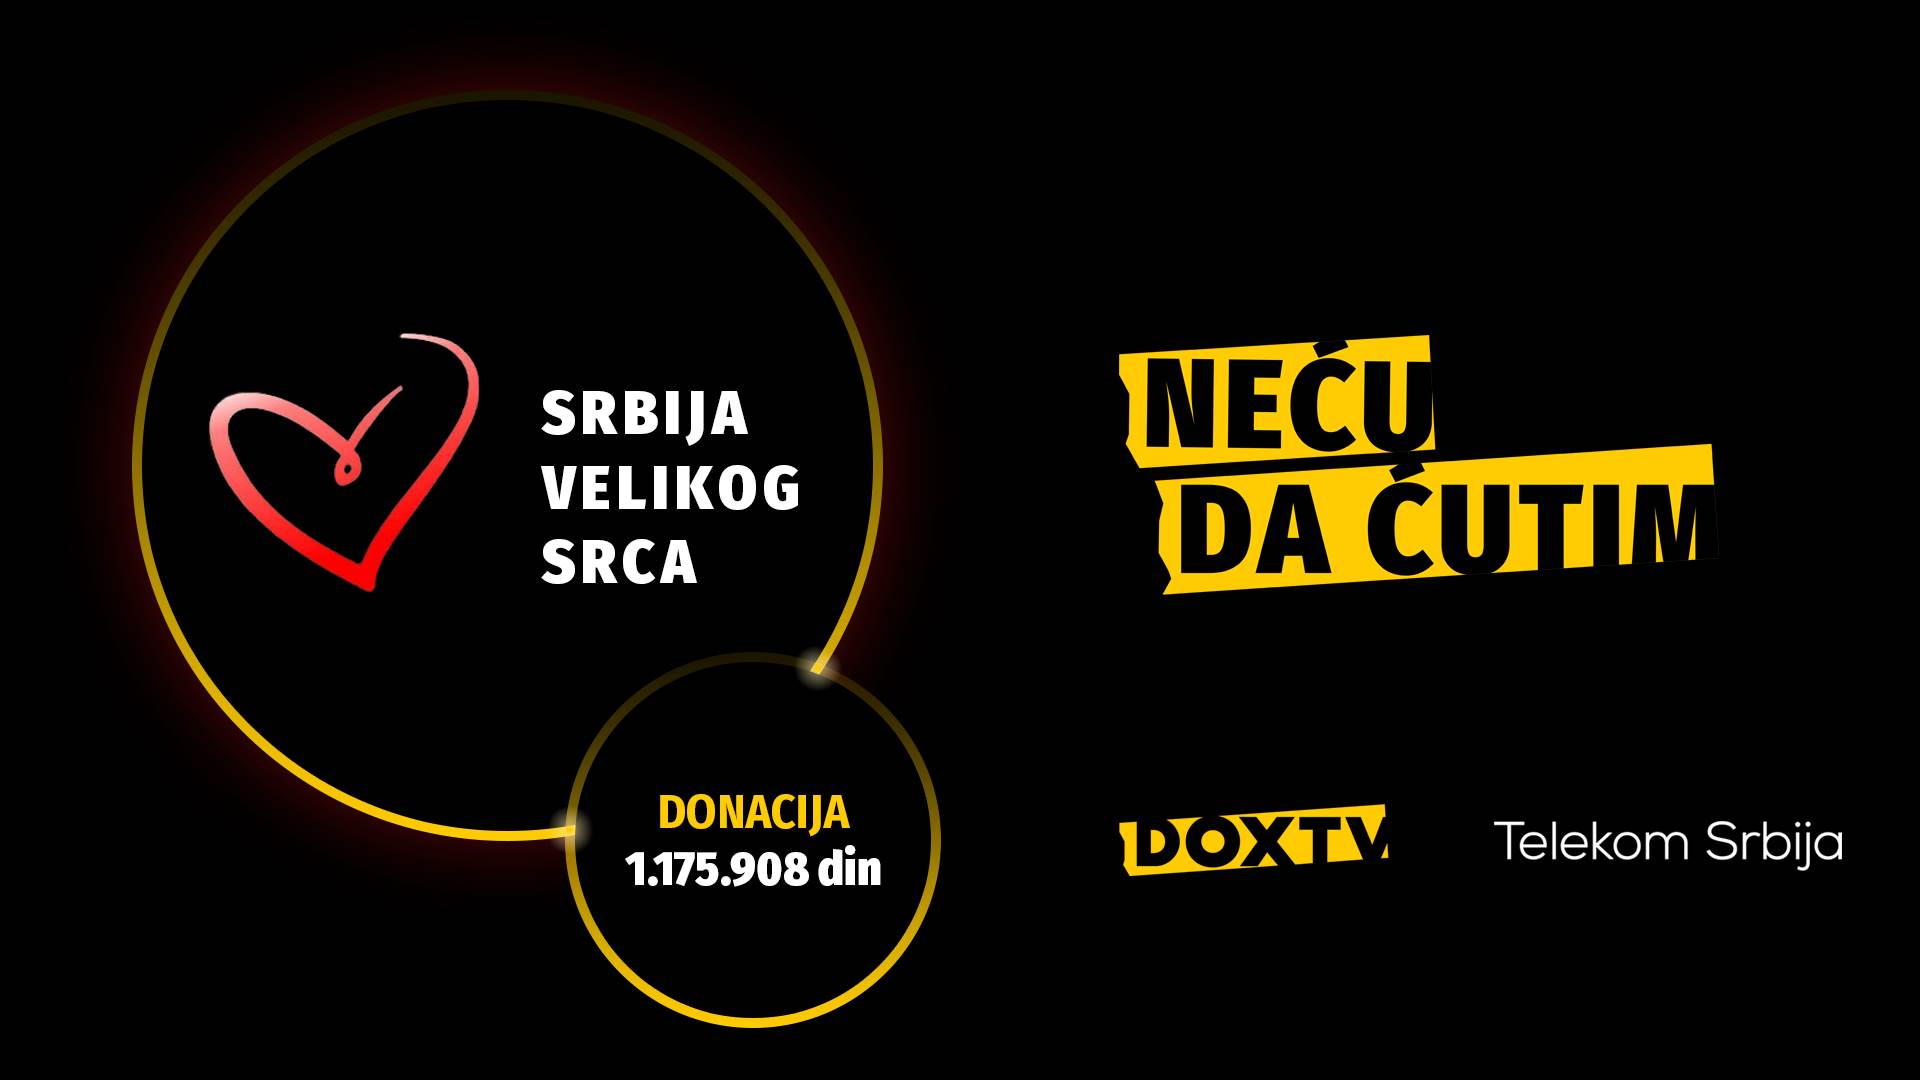  dox tv telekom srbija 